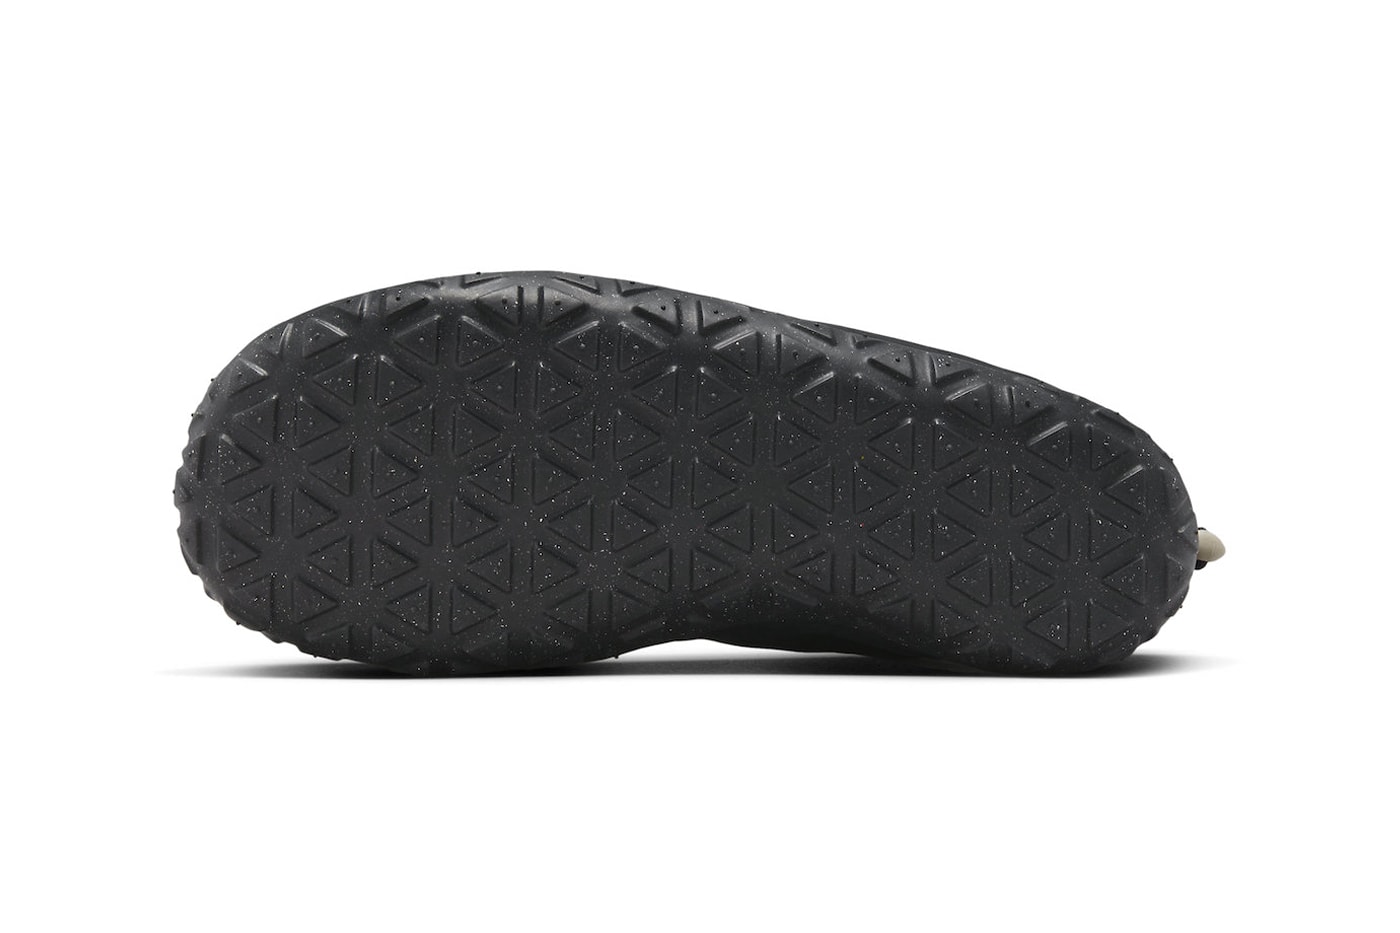 ナイキACGからオールブラック仕様の新作エアモックが登場 Nike ACG Air Moc Receives a "Black Leather" Treatment FV4569-001 Black/Black-Black-Black-Summit White